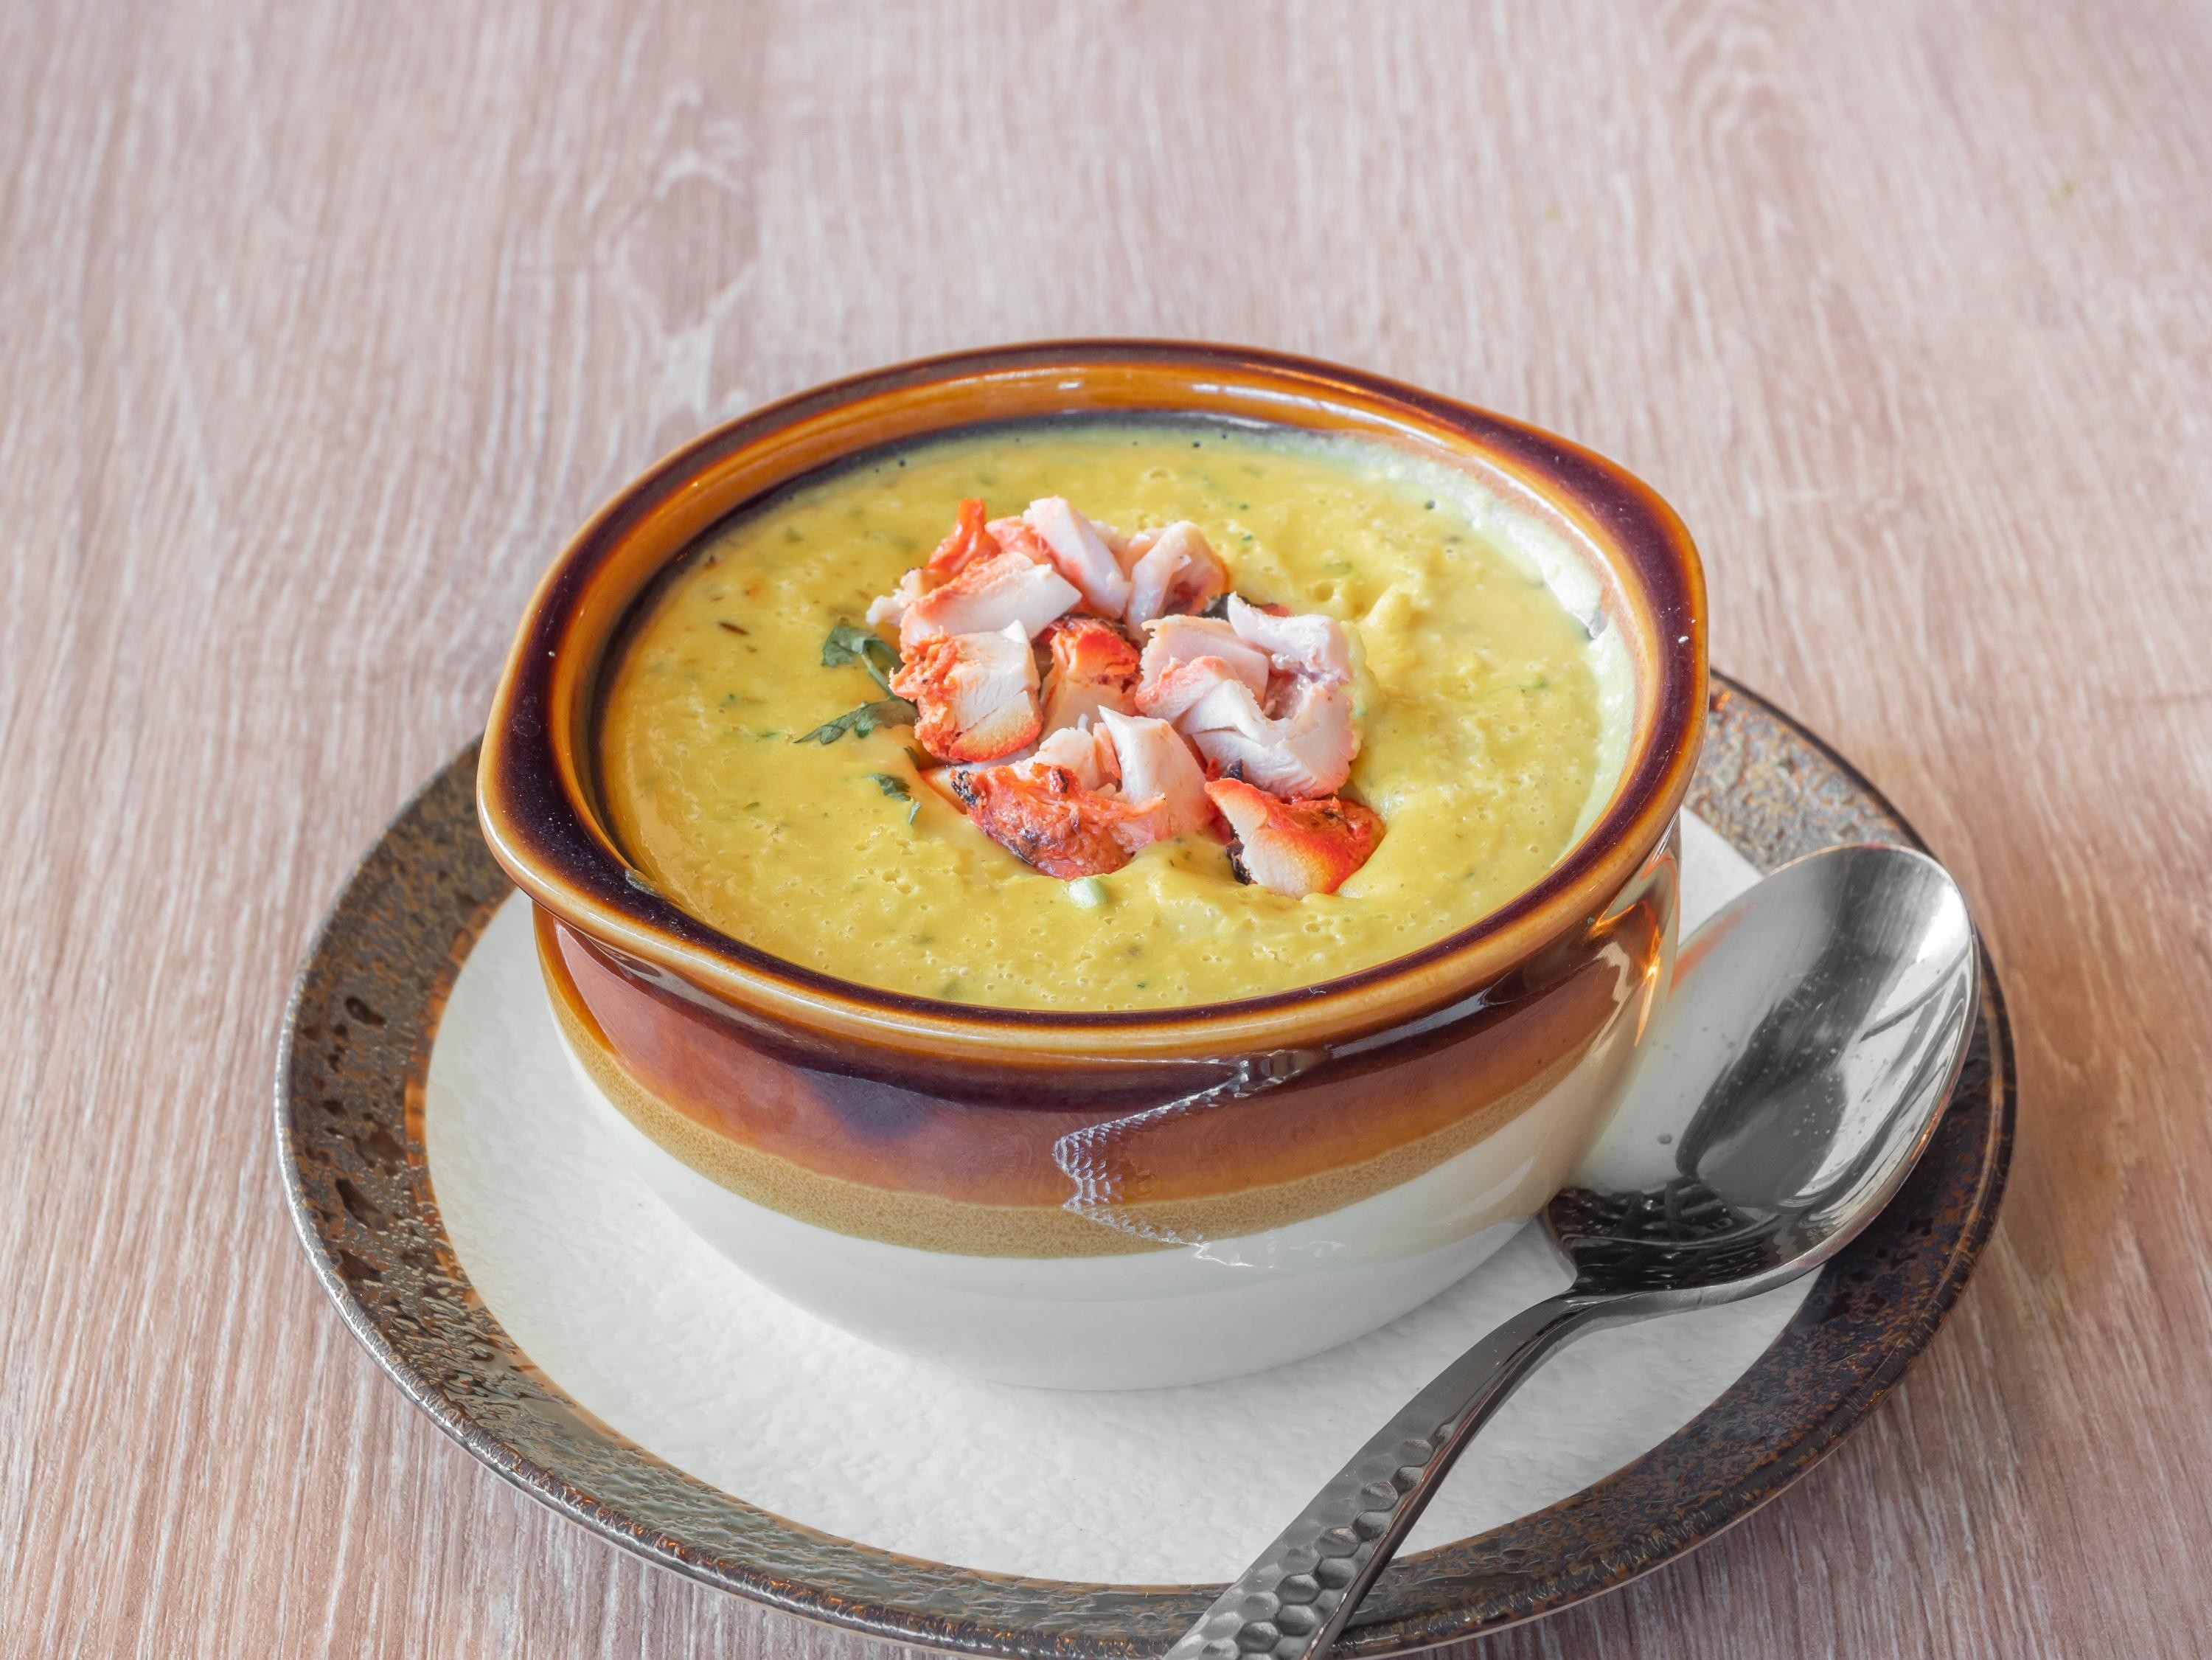 Murgh lentil soup